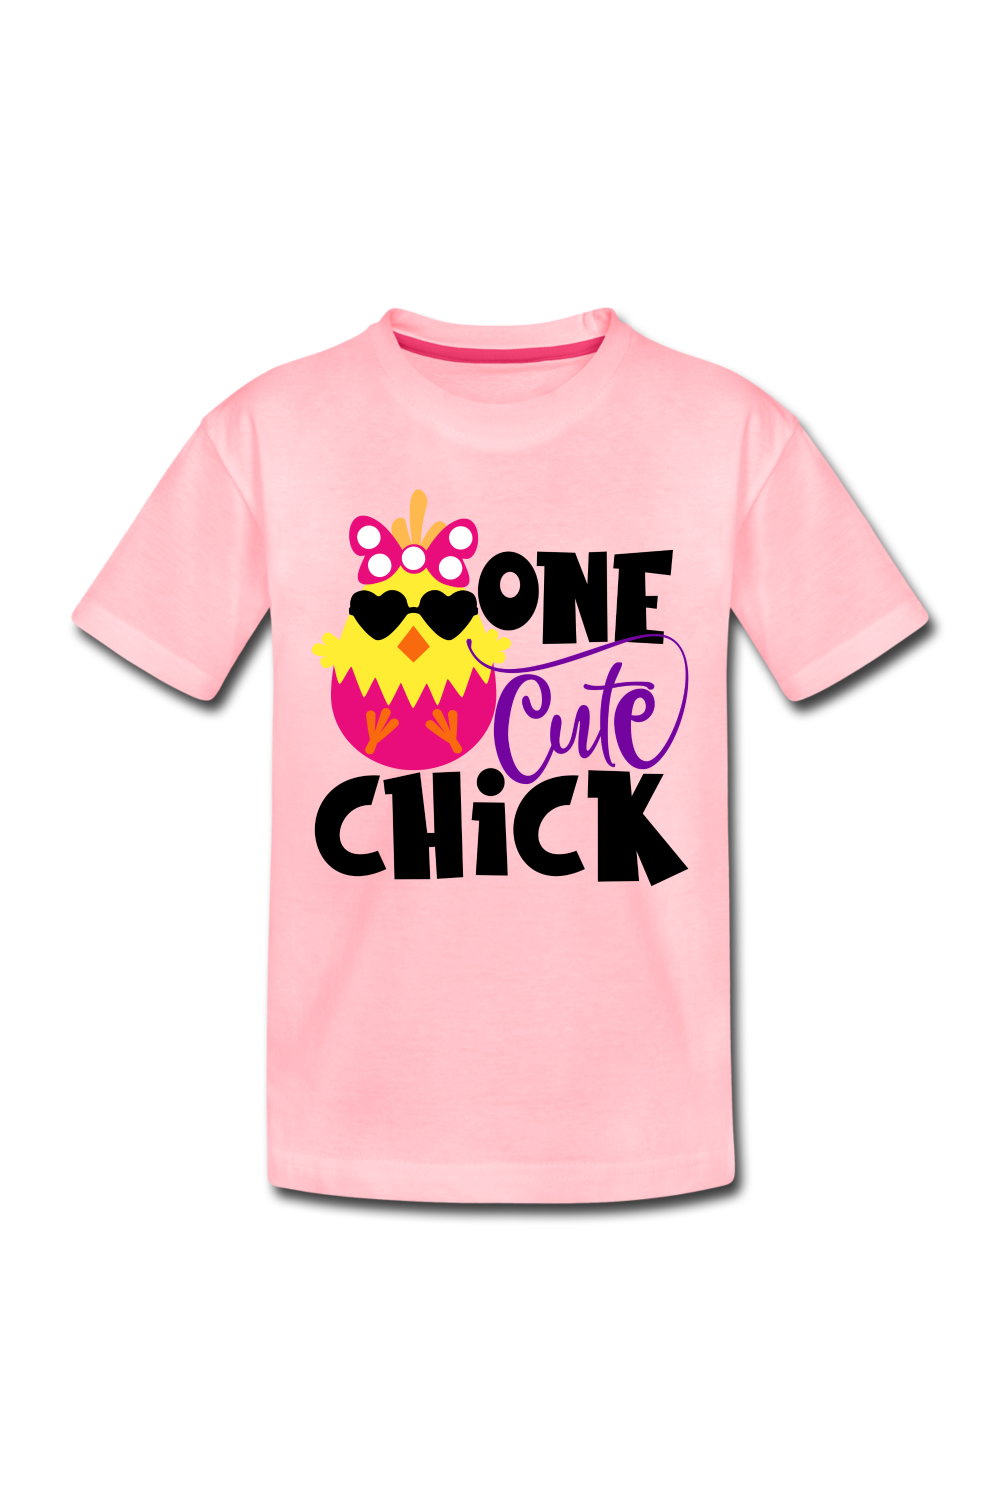 Girls Cute Chick Easter Short Sleeve T-Shirt - pink - NicholesGifts.online